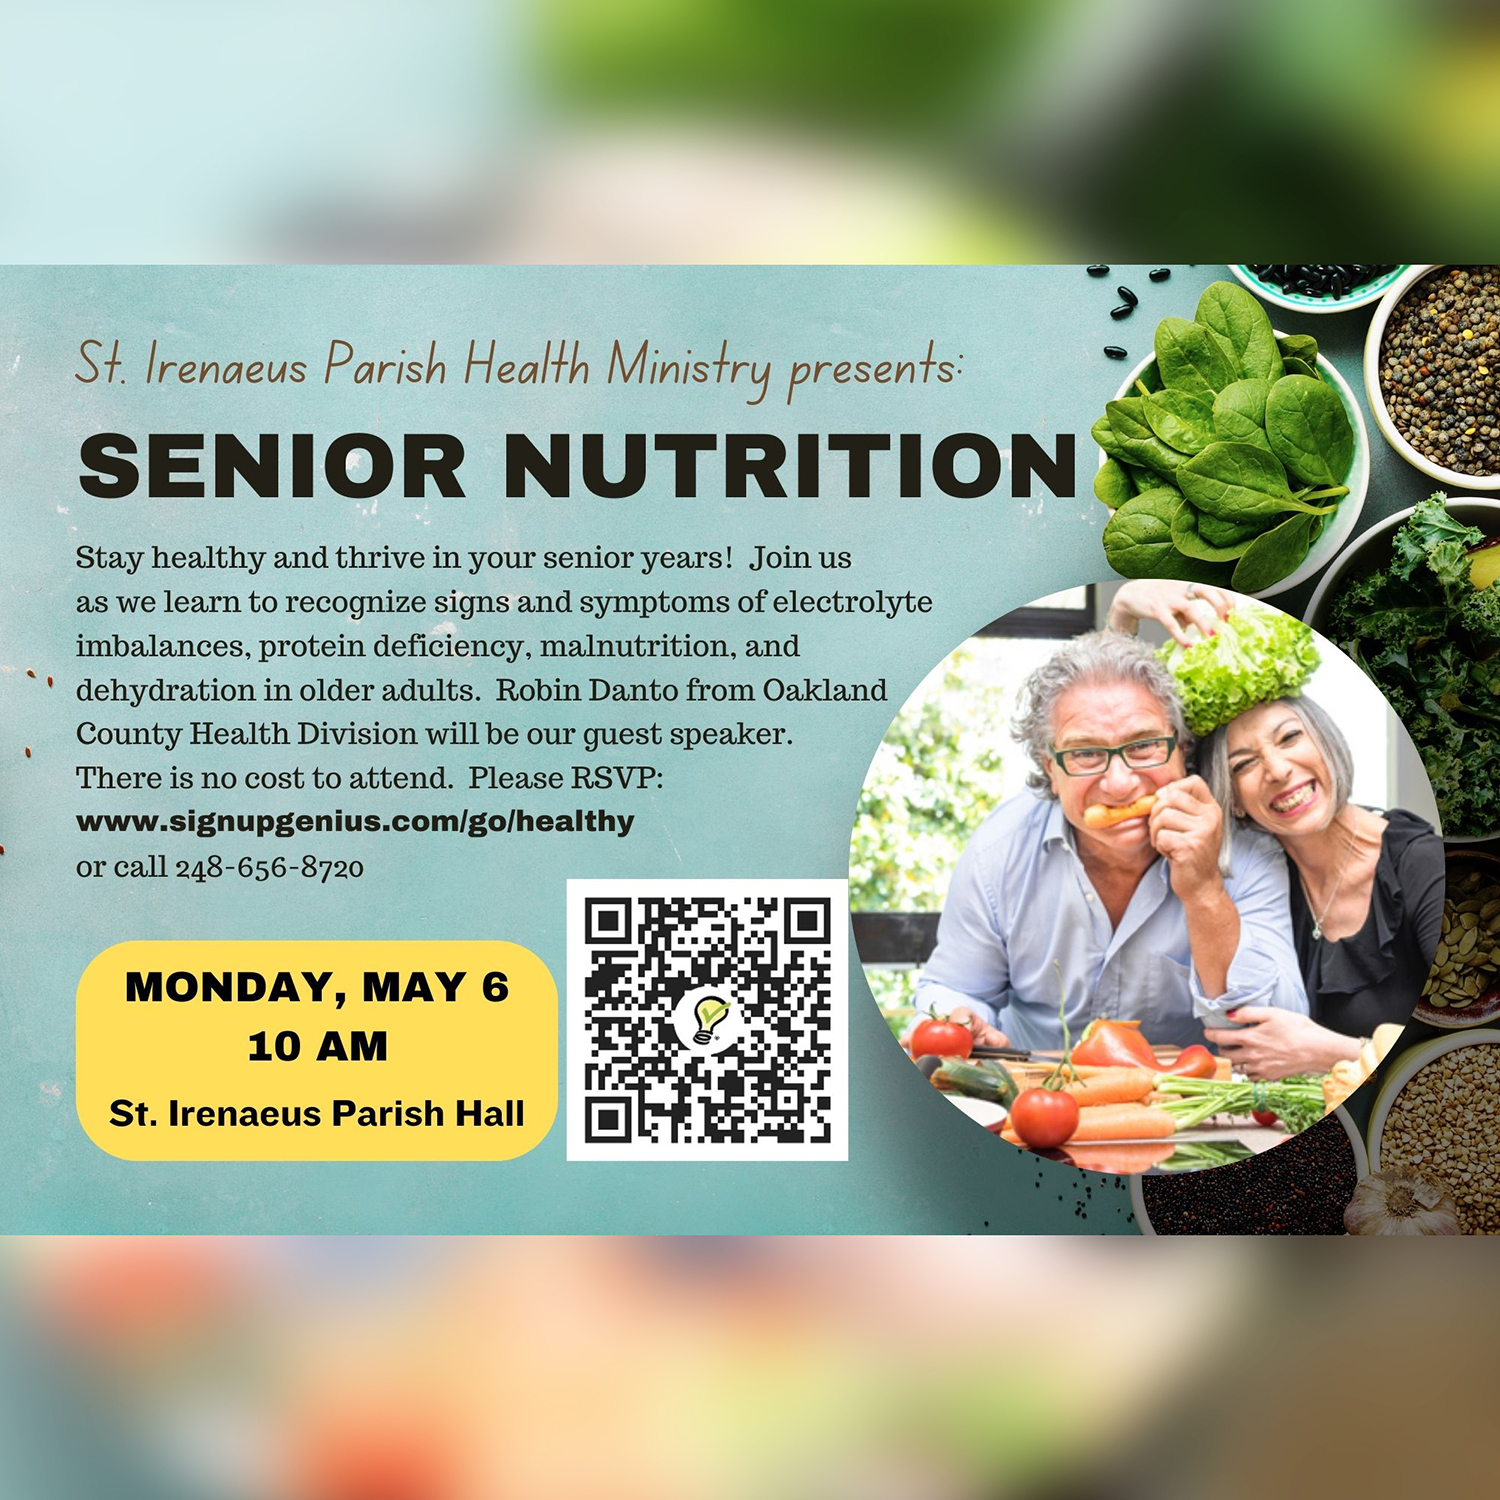 Adult Nutrition Program Information and RSVP